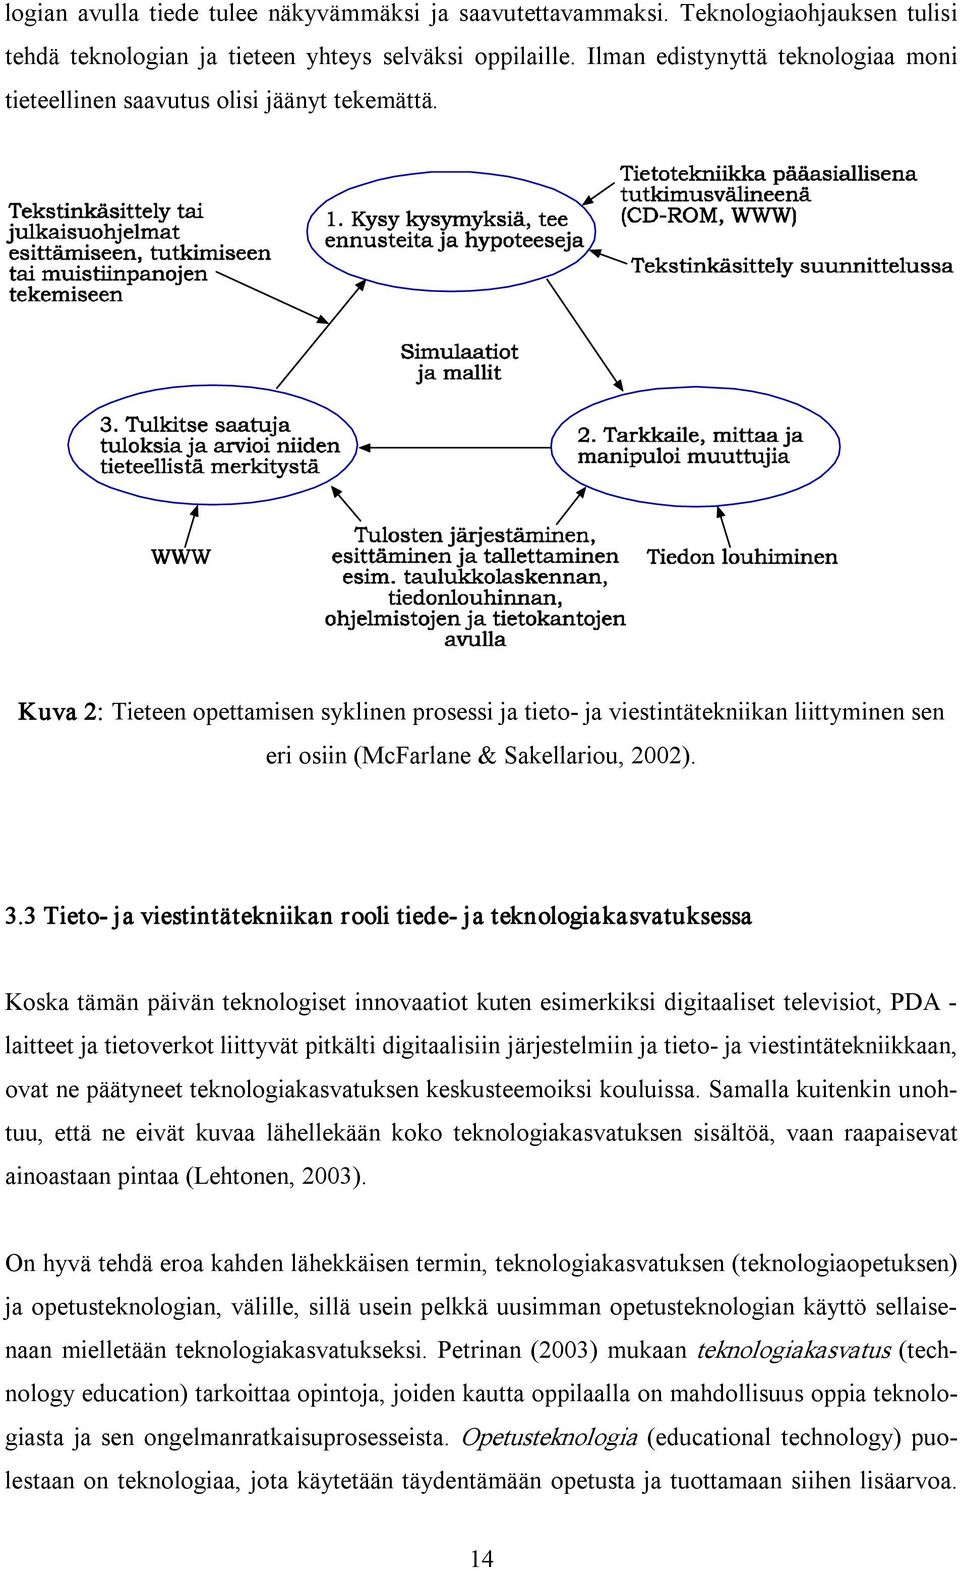 Kuva 2: Tieteen opettamisen syklinen prosessi ja tieto ja viestintätekniikan liittyminen sen eri osiin (McFarlane & Sakellariou, 2002). 3.